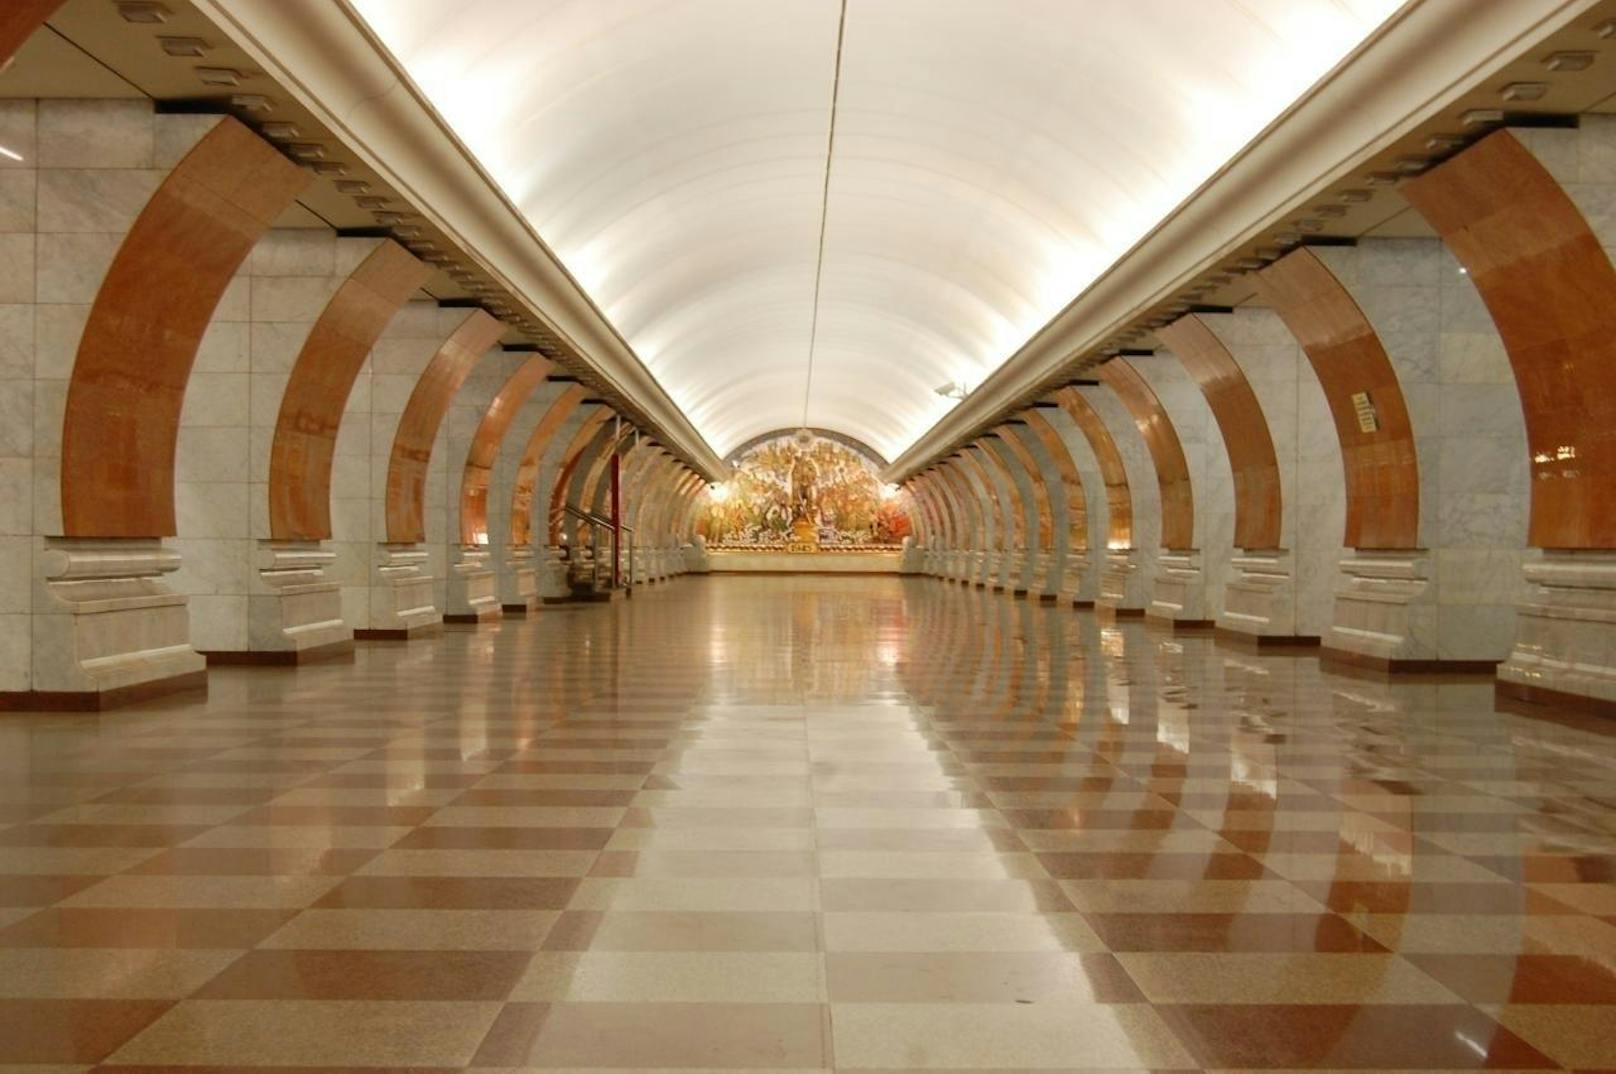 Platz 3: Park Pobedy, Moskau. Die Moskauer U-Bahn ist ohne Zweifel eine der prächtigsten U-Bahnen der Welt. Viele der über 200 Stationen sind wahre Kunstwerke und ähneln eher unterirdischen Kathedralen als tristen Untergrundbahnhöfen. Auch die Rolltreppen sind rekordverdächtig: Mit 126 Metern Länge gehören sie zu den längsten ununterbrochenen Rolltreppen der Welt!